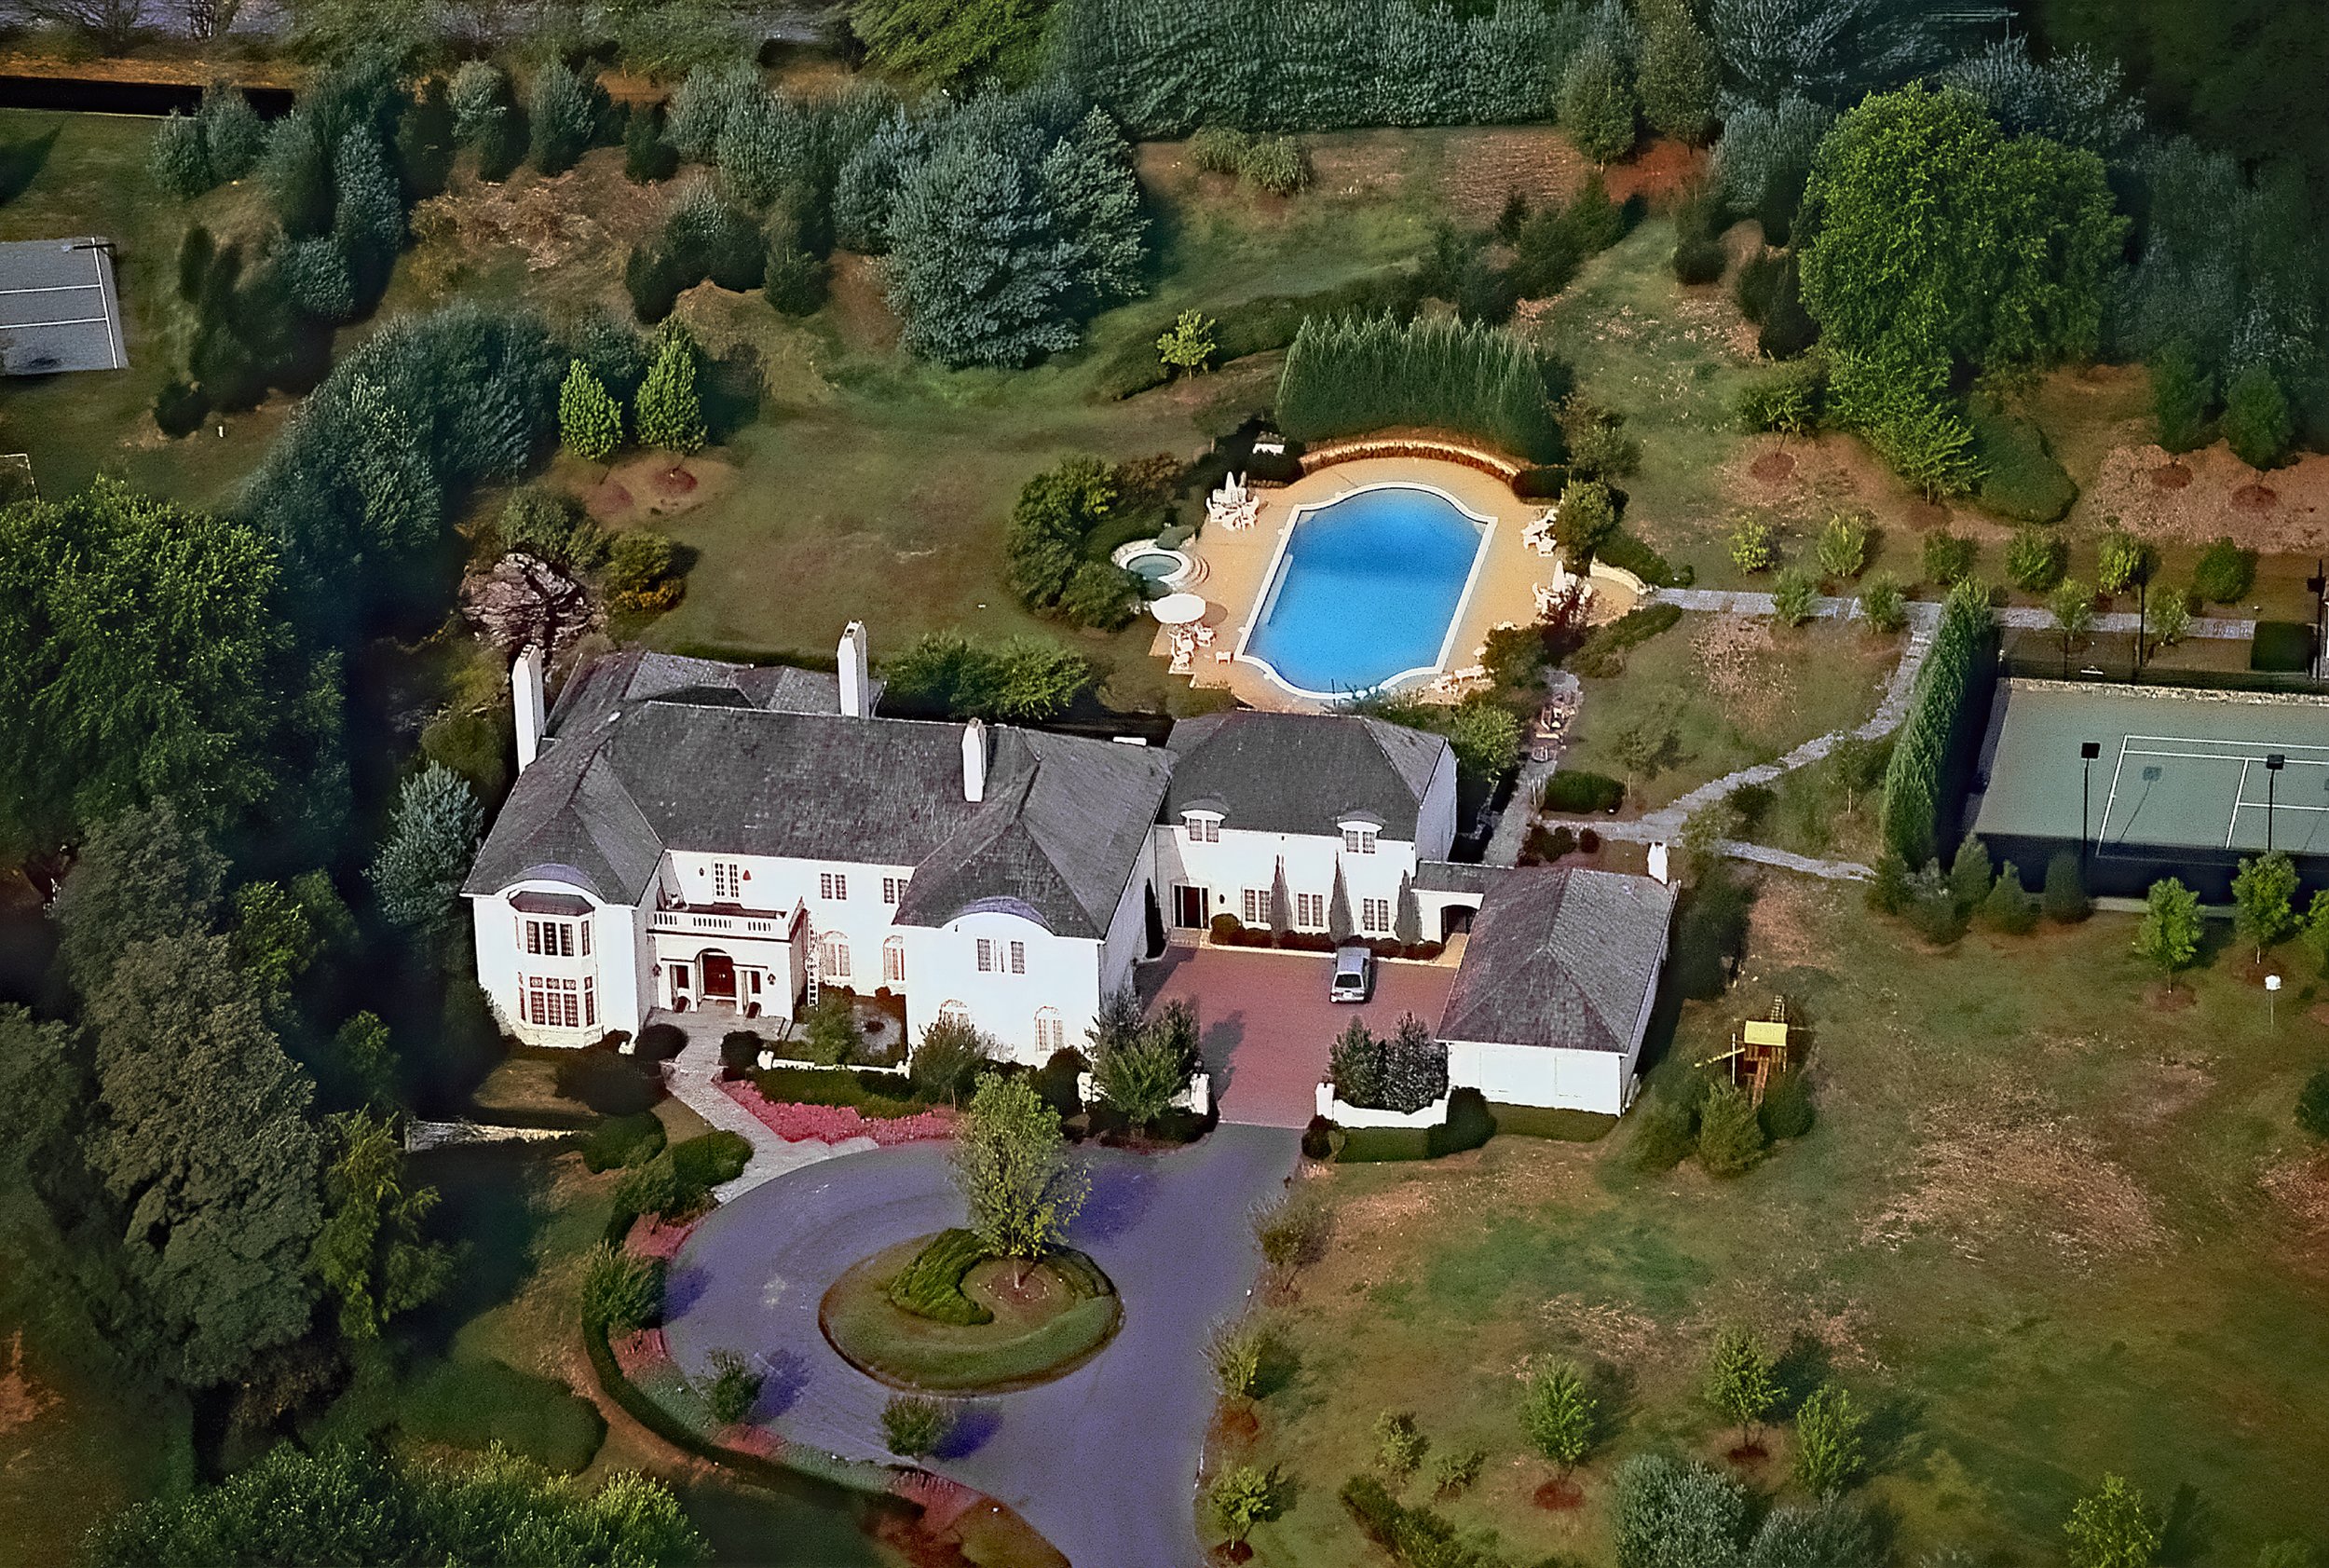 Vues aériennes du domaine de Robert Altman et Lynda Carter, qui comprend une piscine, un jacuzzi et un court de tennis, situé à Potomac, dans le Maryland, prises en 1991 | Photo : Getty Images